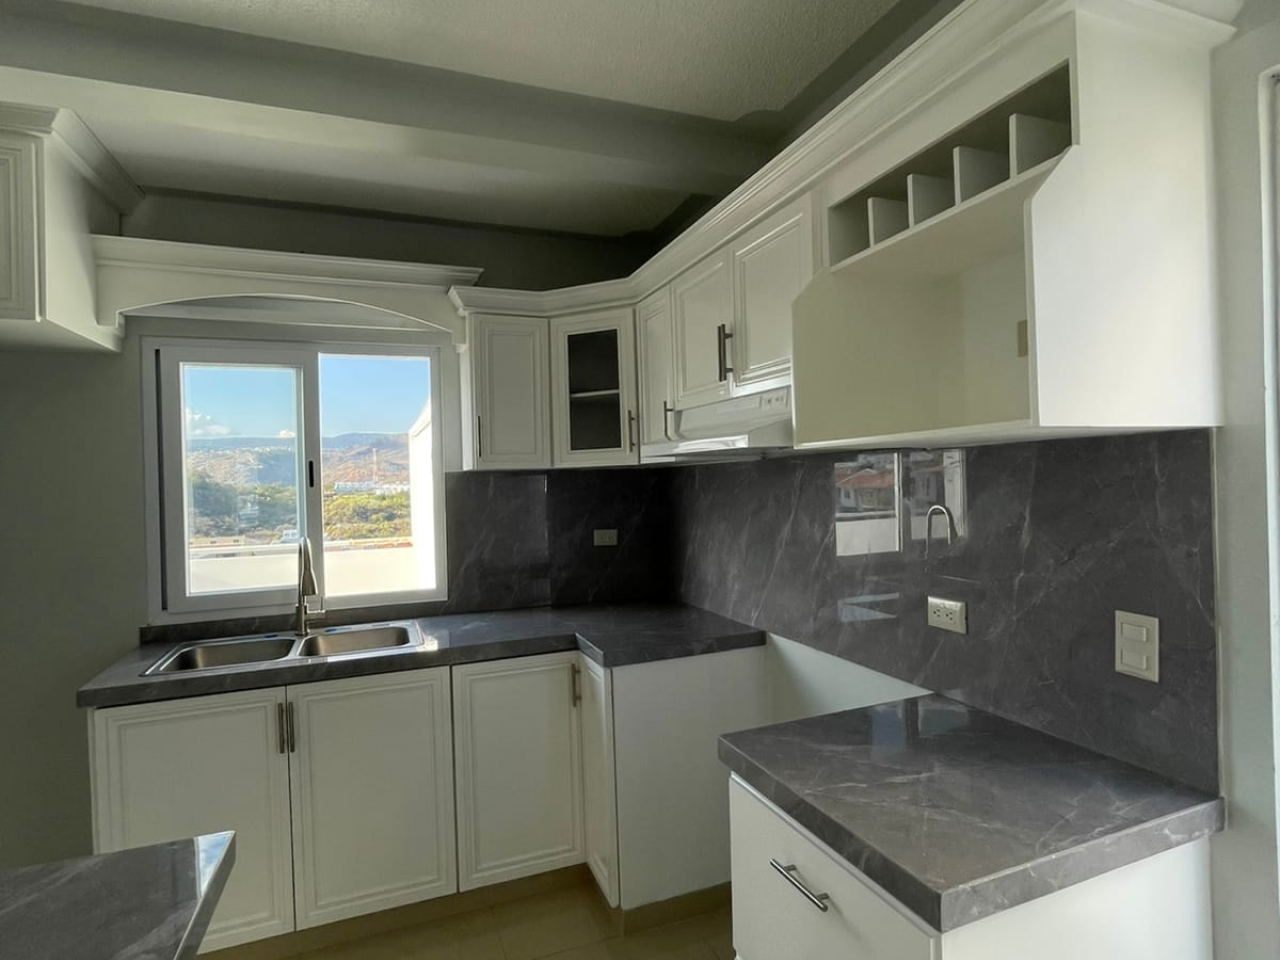 Cocina amplia con muebles de madera color blanco, plancha granito color gris y una ventana con vista a la residencial.